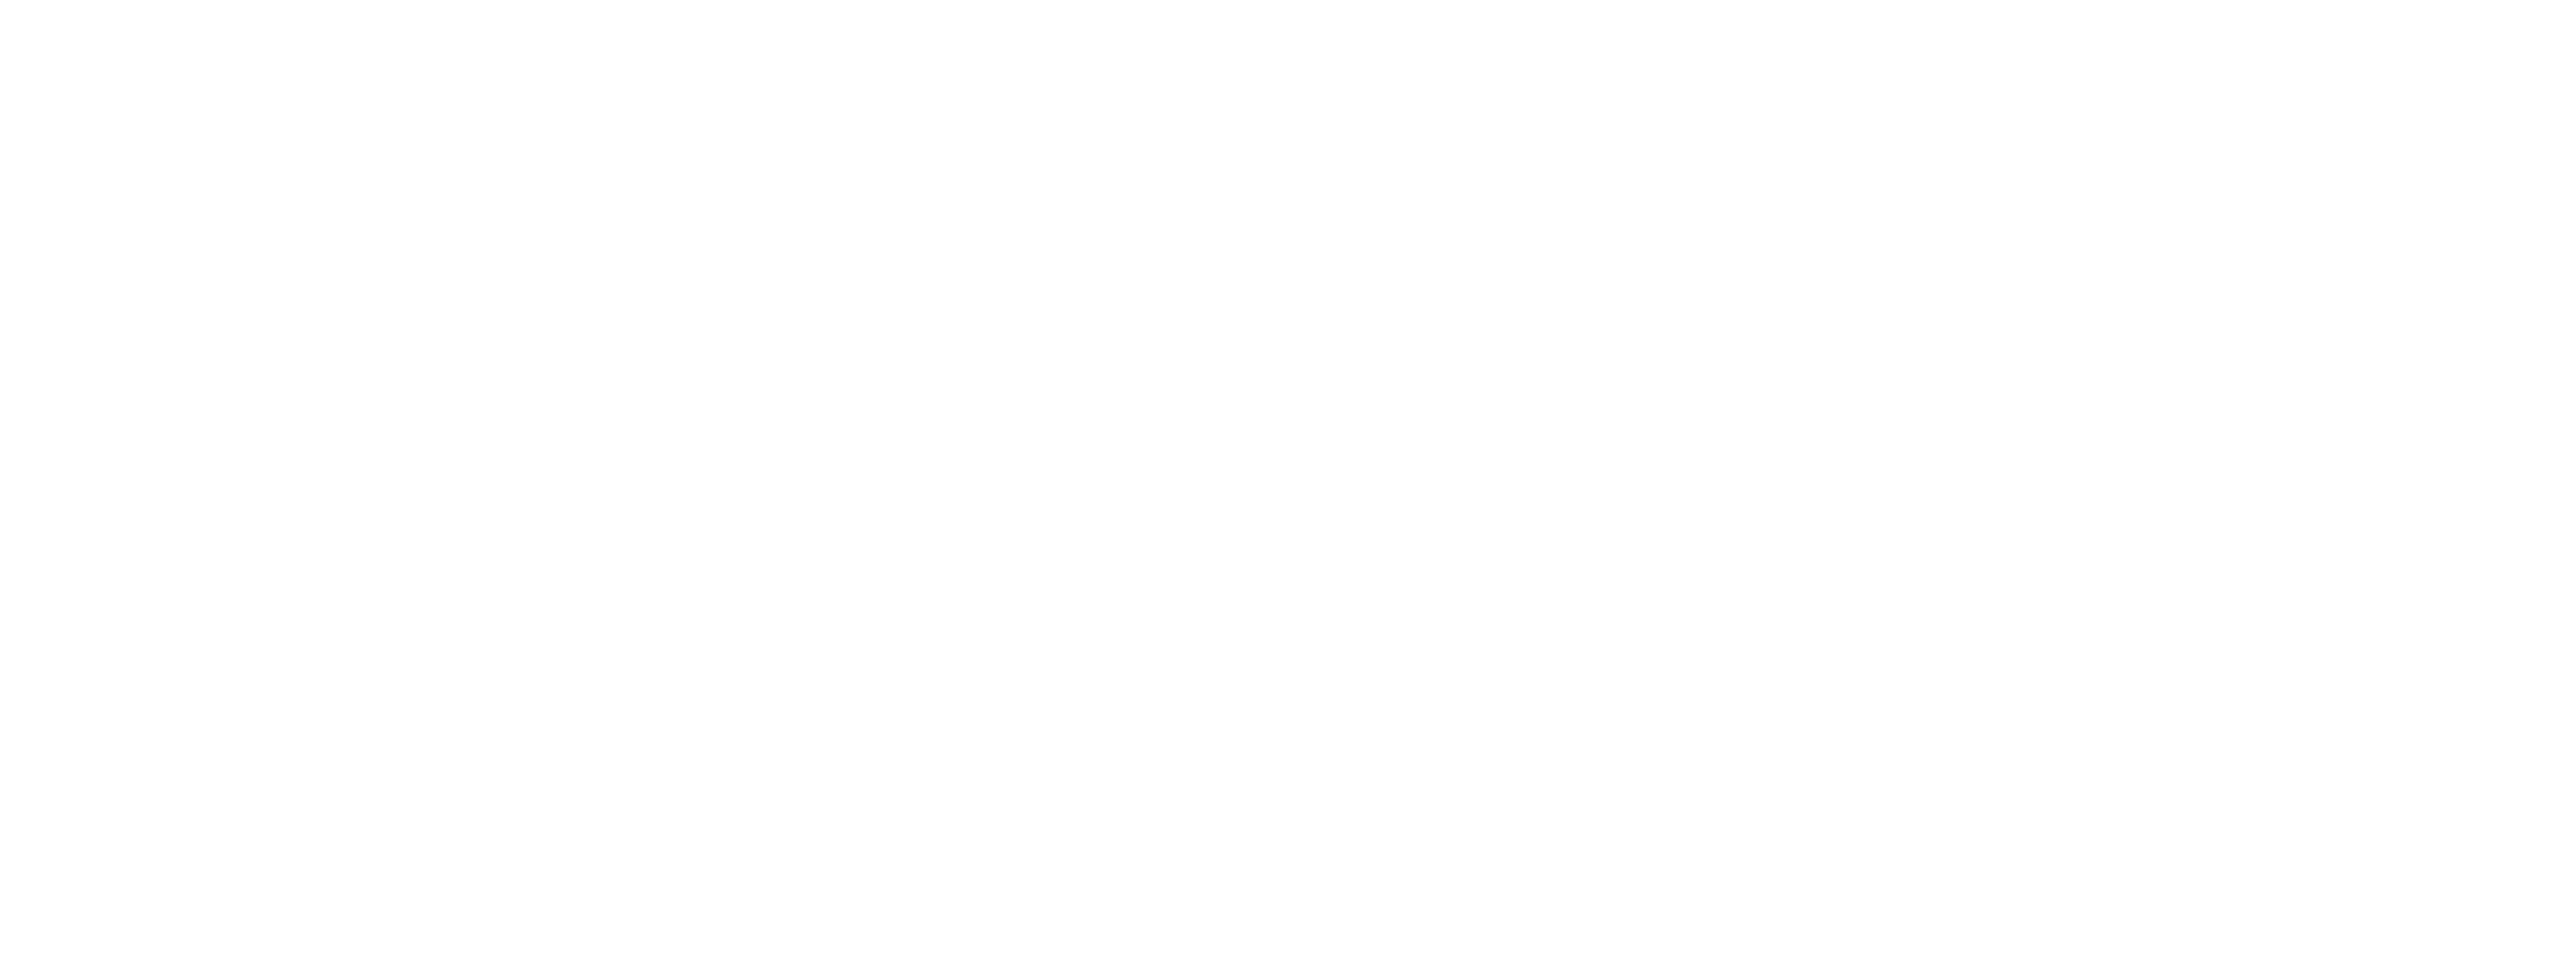 cucchiburgers-duevgrafica-logo